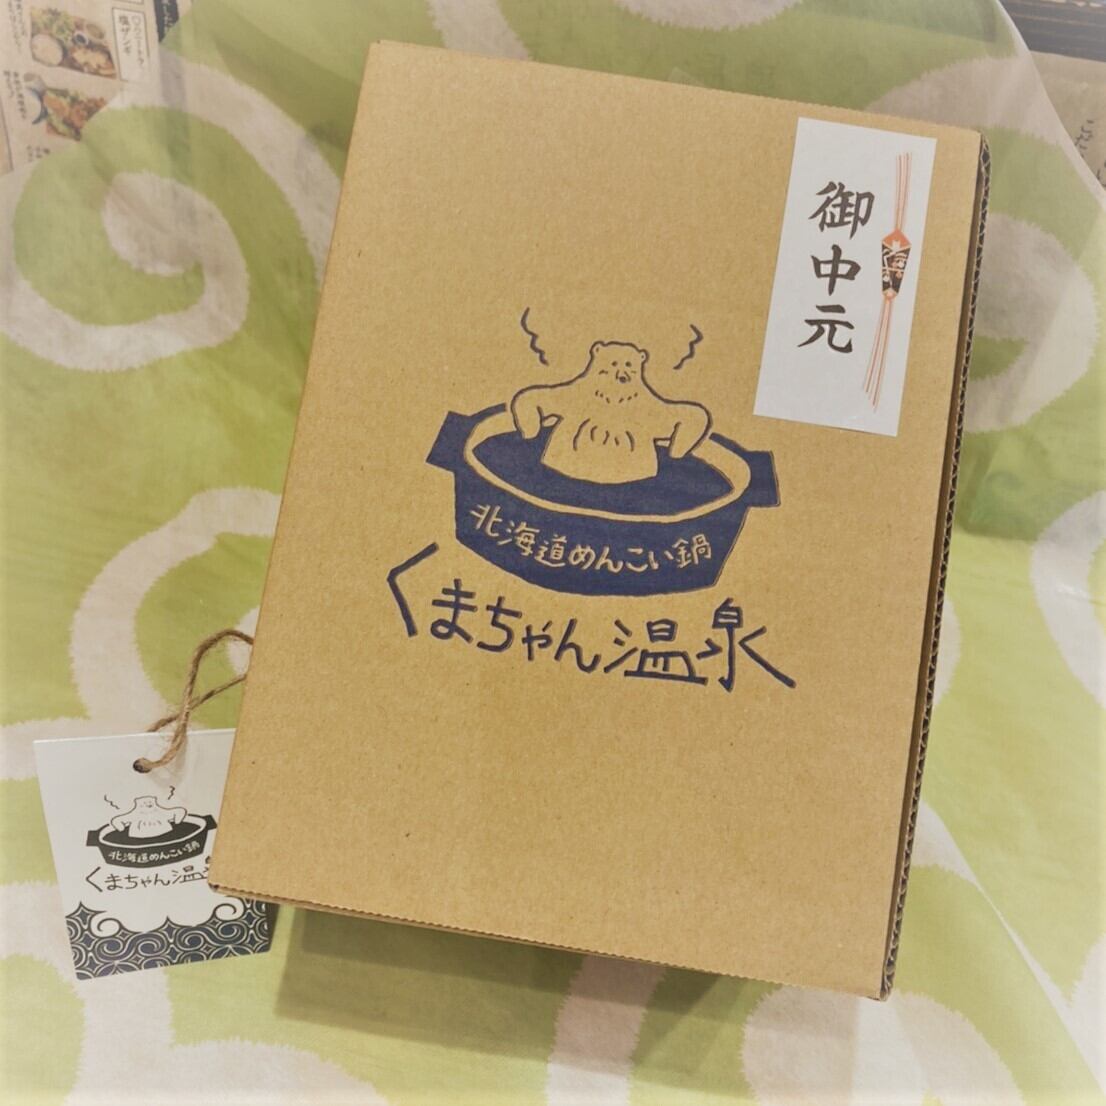 【4/3発送分】茶くまペア_KM10101002_ 20220403